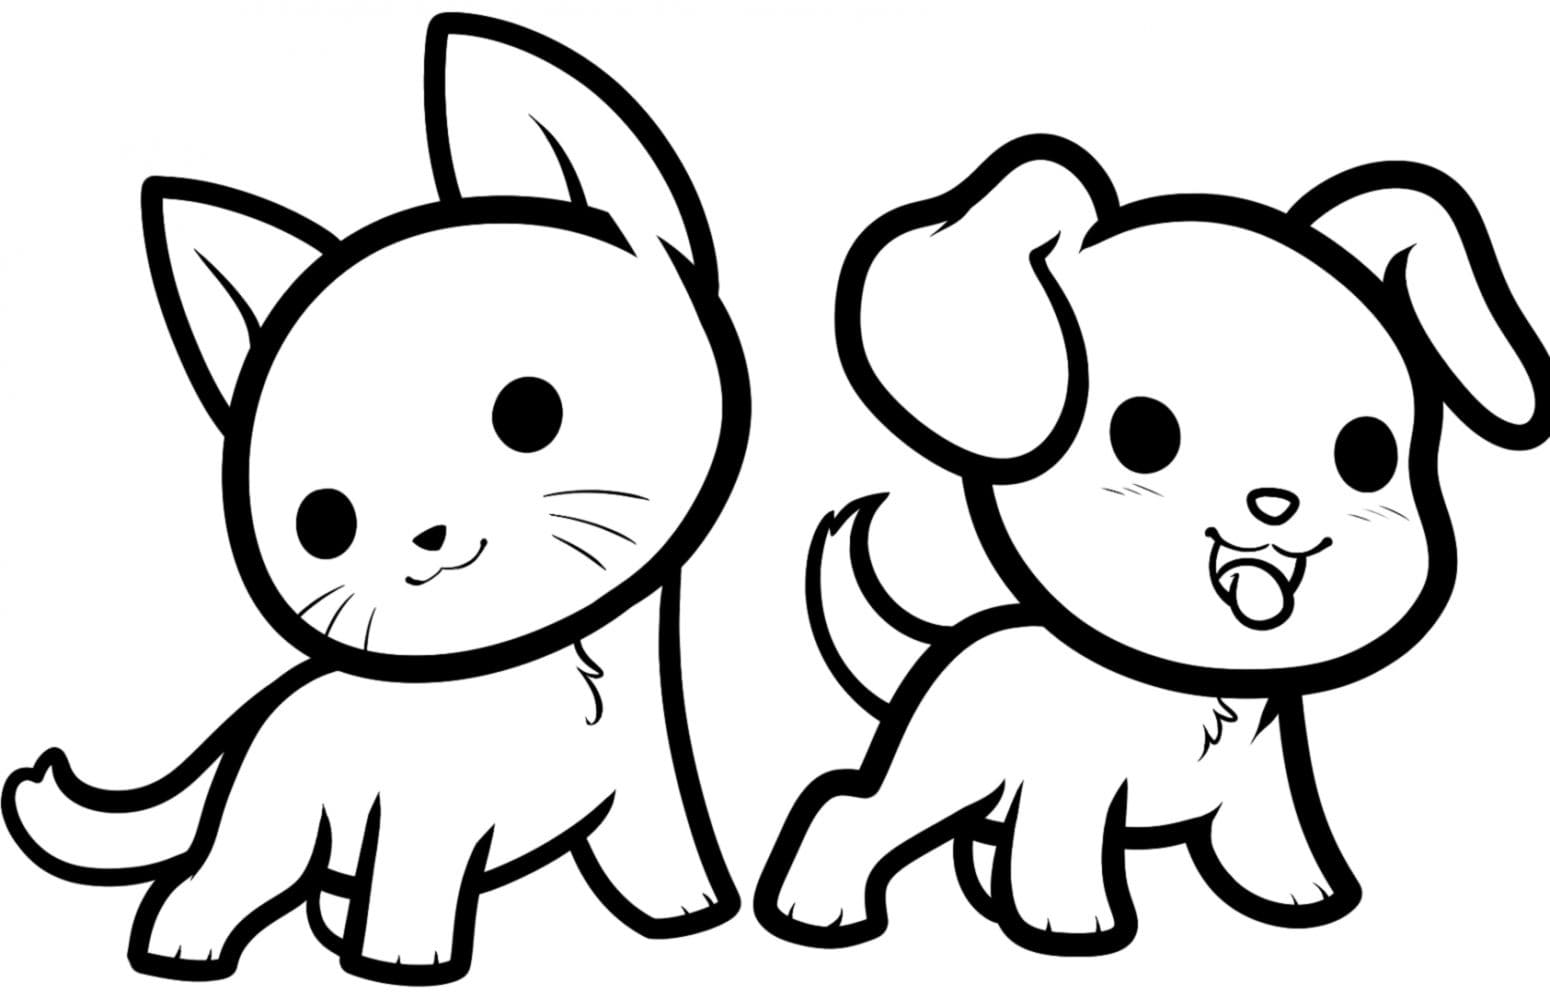 Cachorros e pets fofinhos e bonitinhos, desenhos para colorir